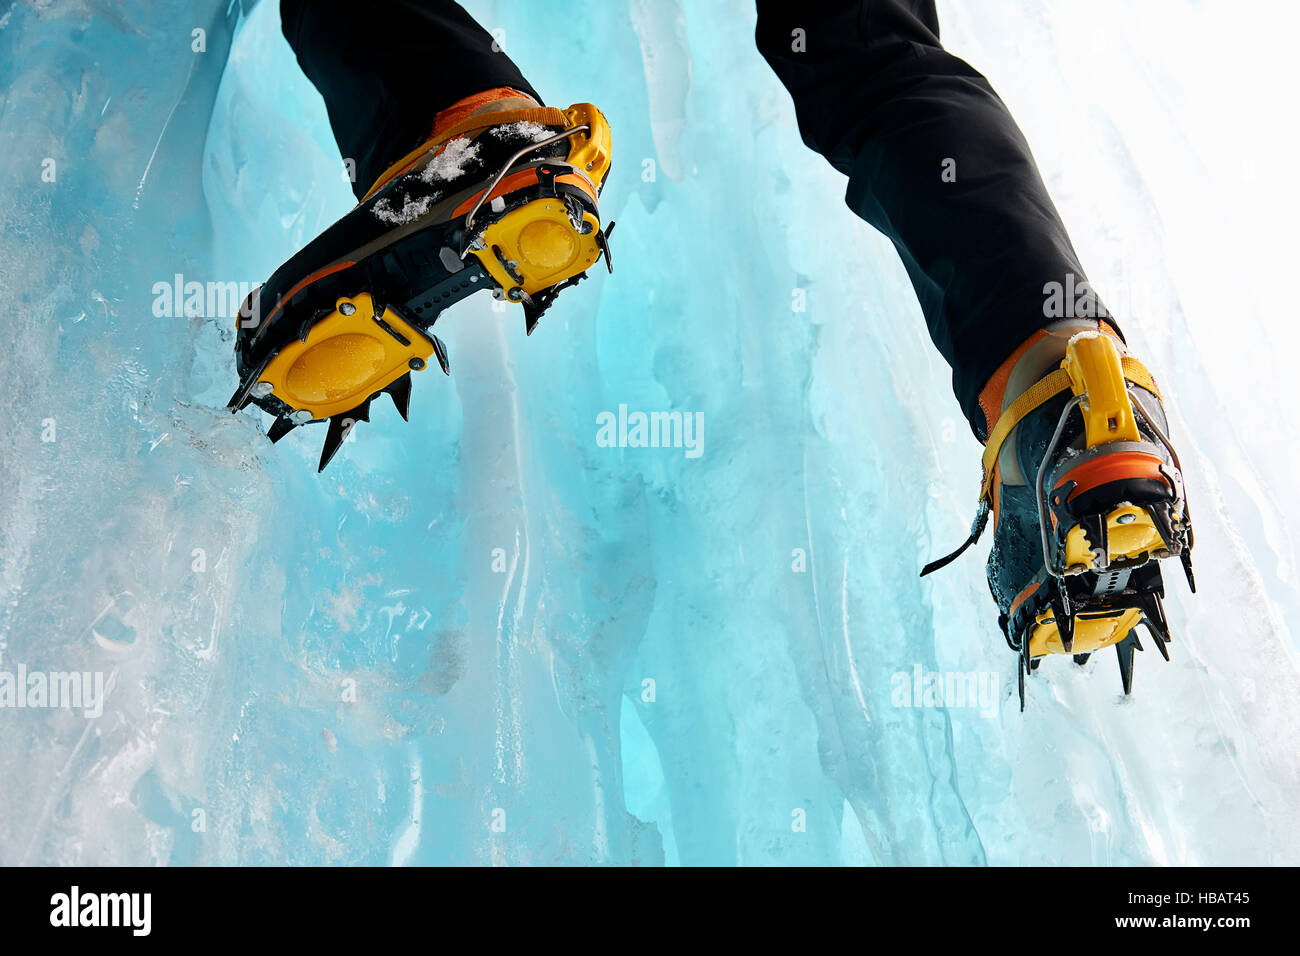 Portrait de ice climbers pieds portant des crampons Banque D'Images